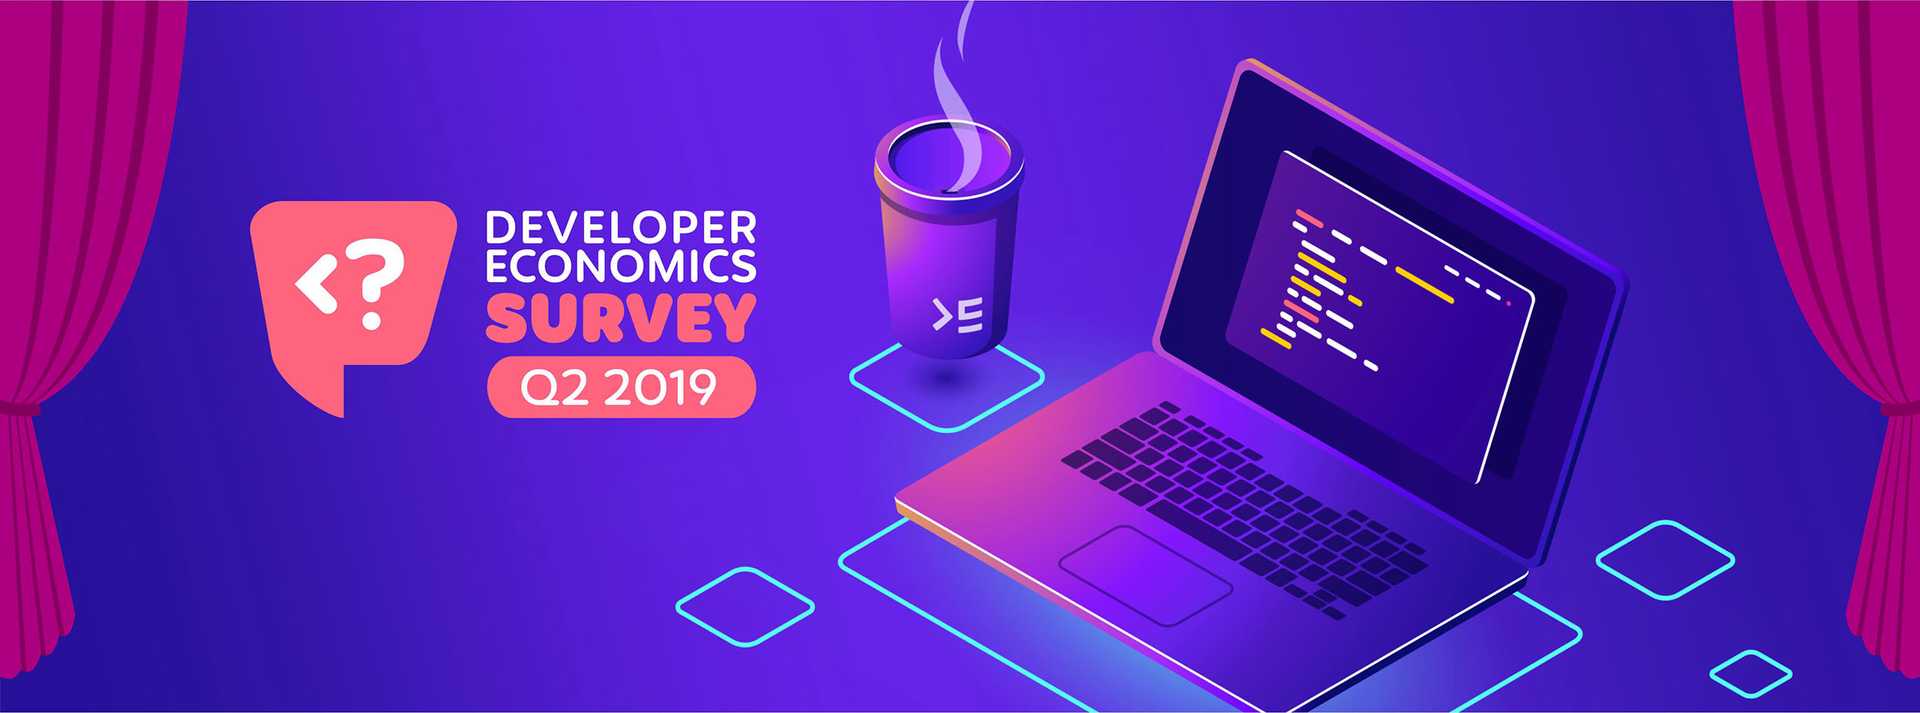 developer economics survey Q2 2019